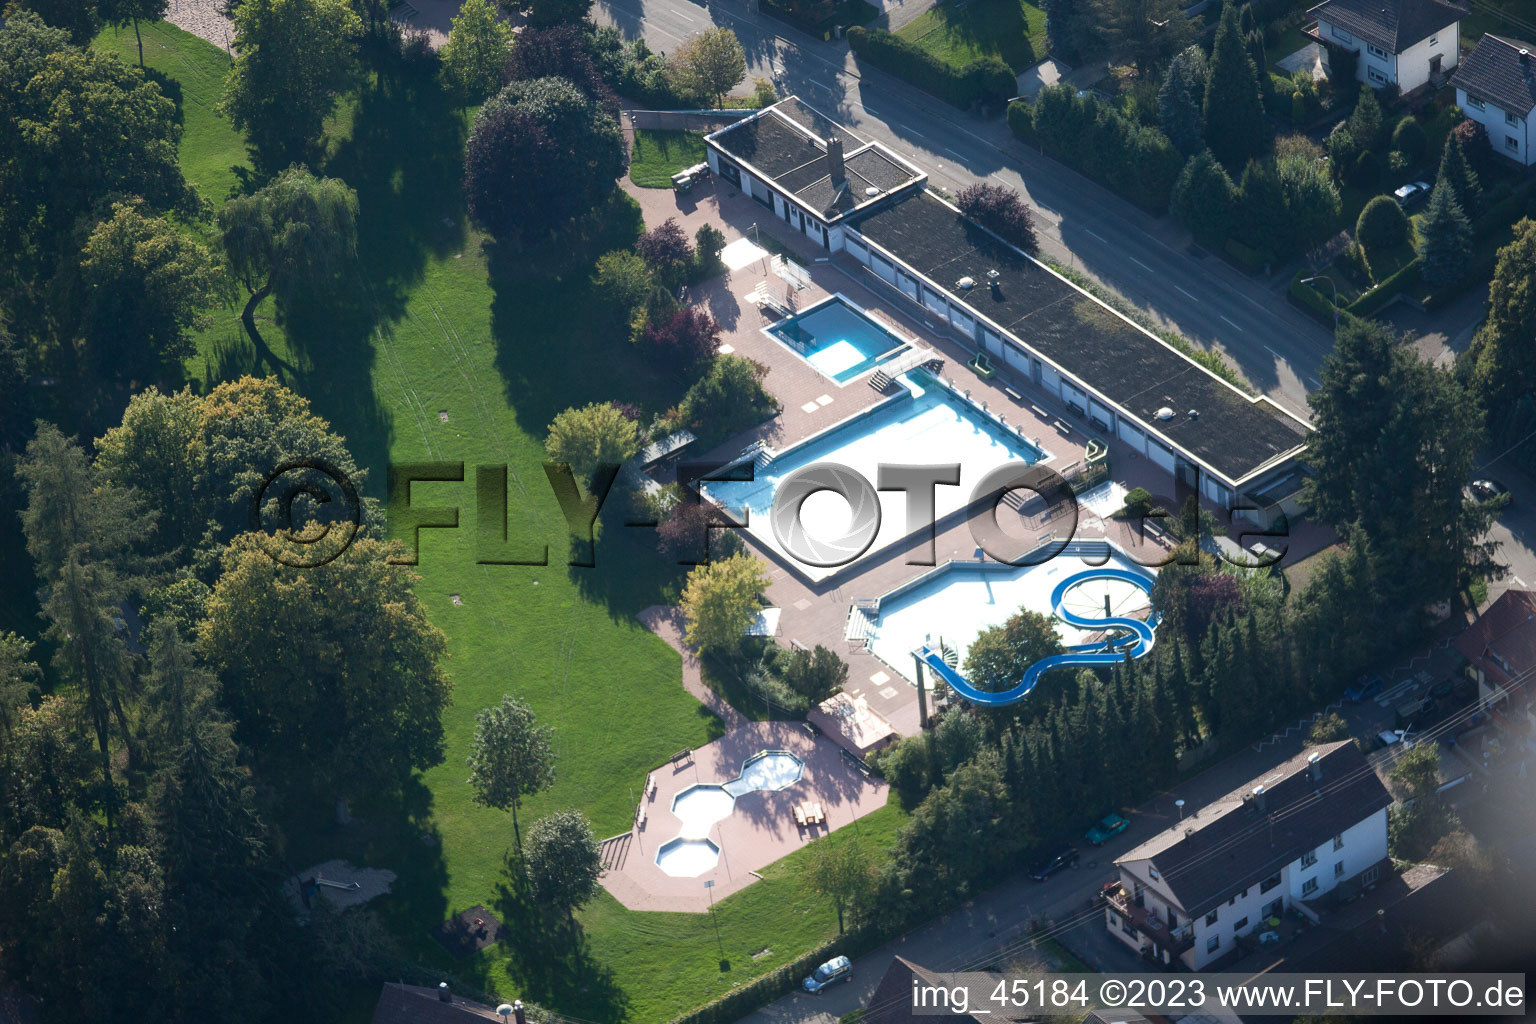 Photographie aérienne de Piscine extérieure à le quartier Langensteinbach in Karlsbad dans le département Bade-Wurtemberg, Allemagne